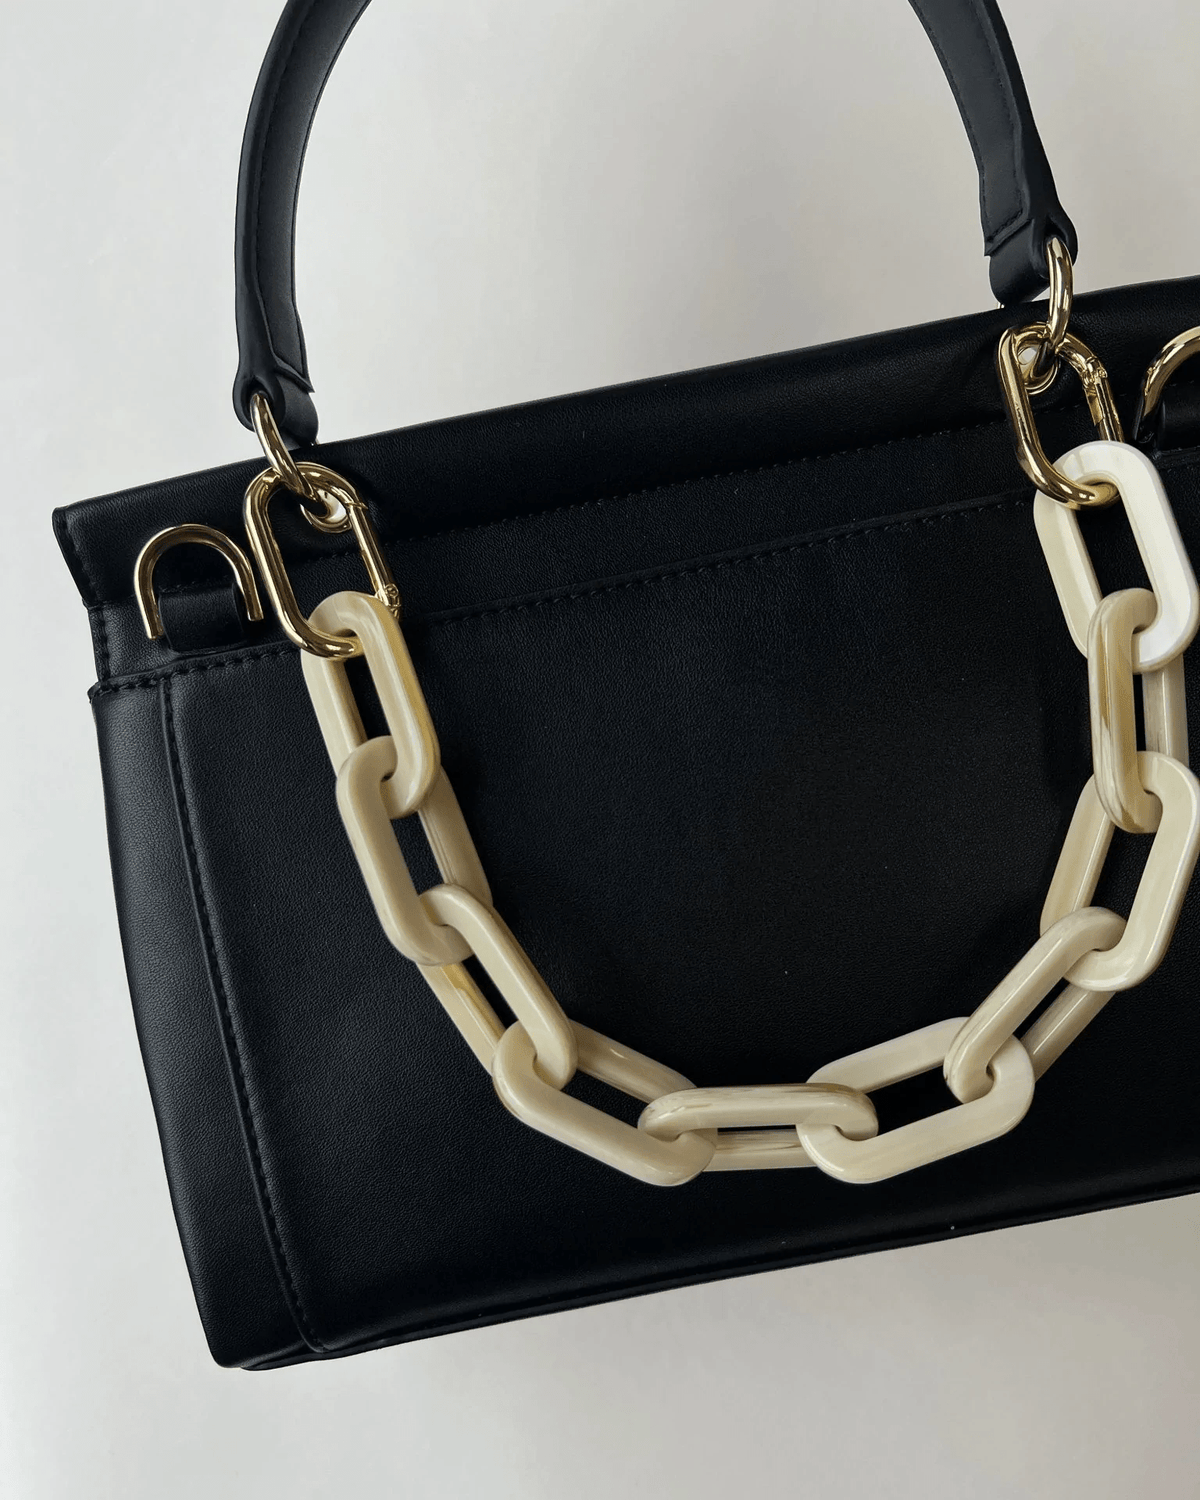 Machete Accessories Alabaster Short Handbag Chain in Alabaster